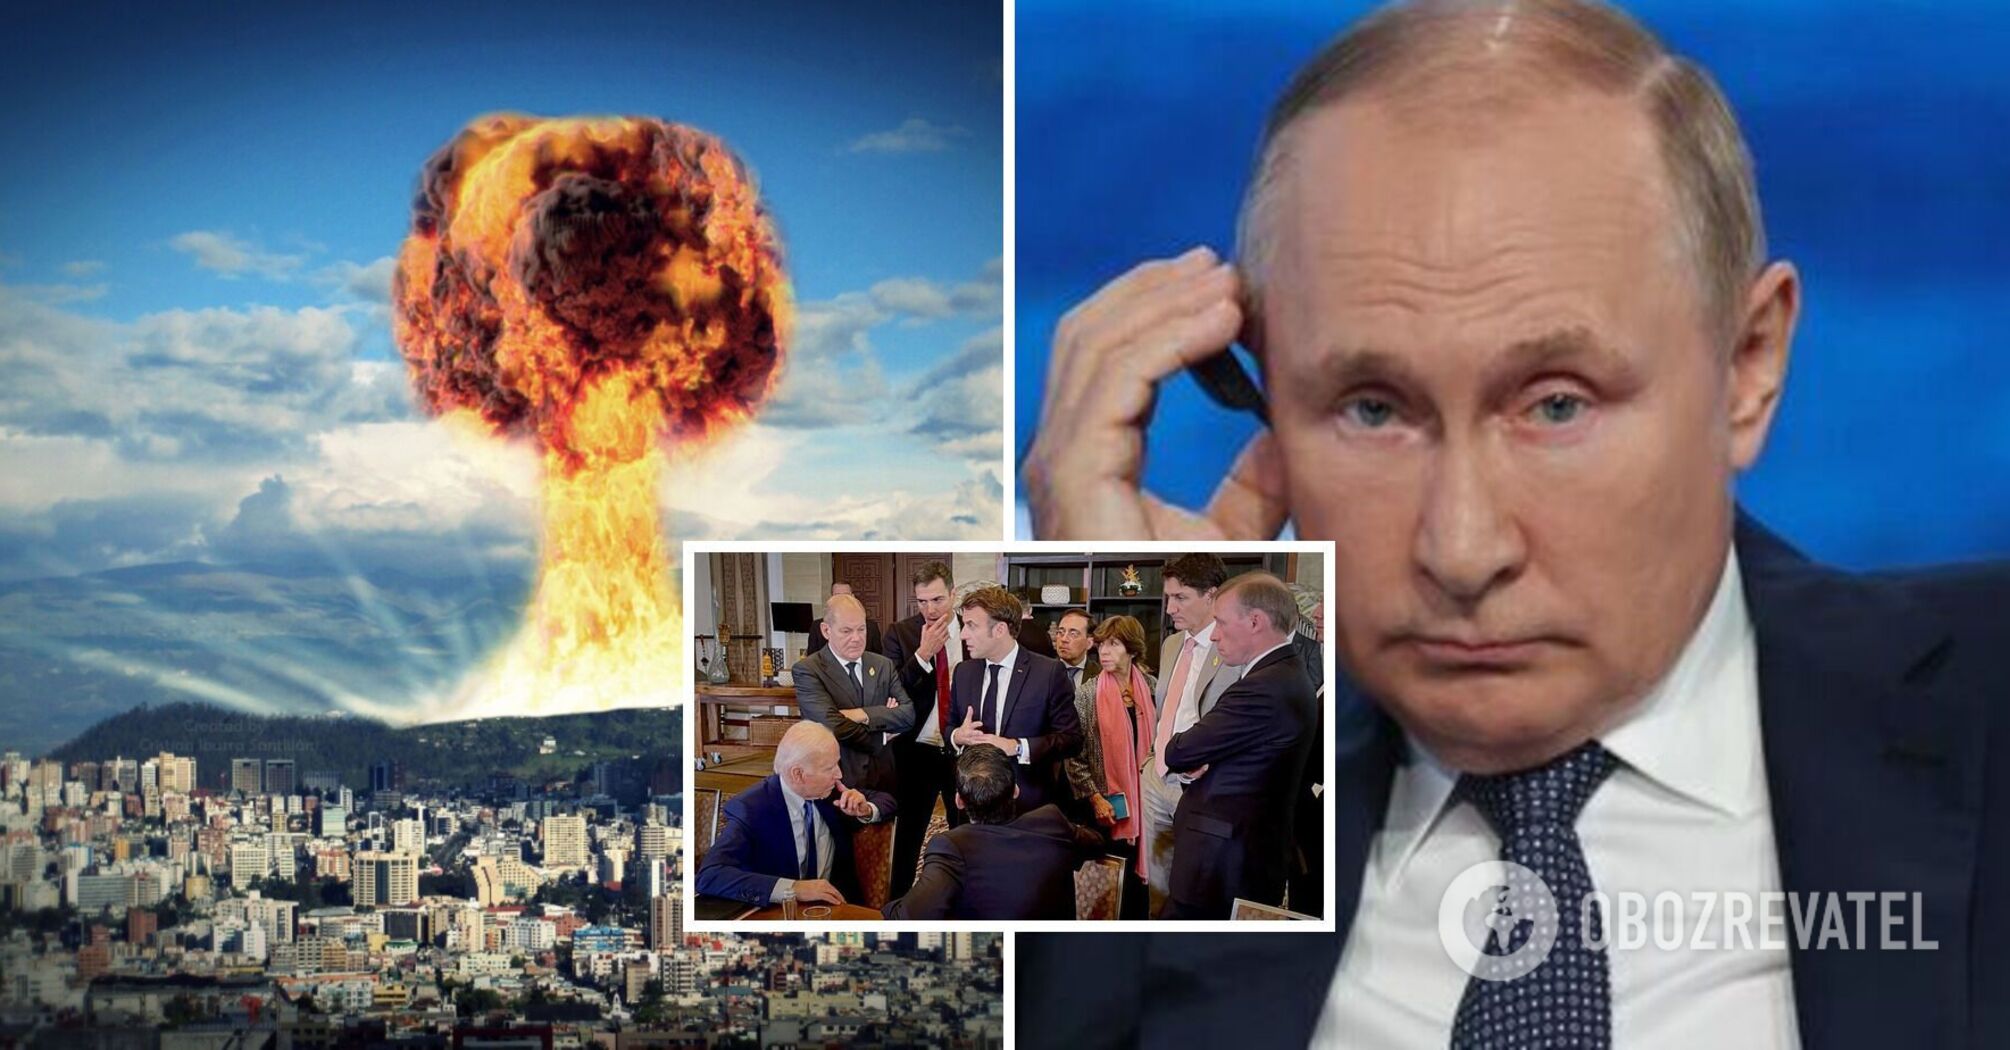 Klimkin: Groźby nuklearne Putina są na najwyższym poziomie, podobnie jak odpowiedź NATO. Wywiad